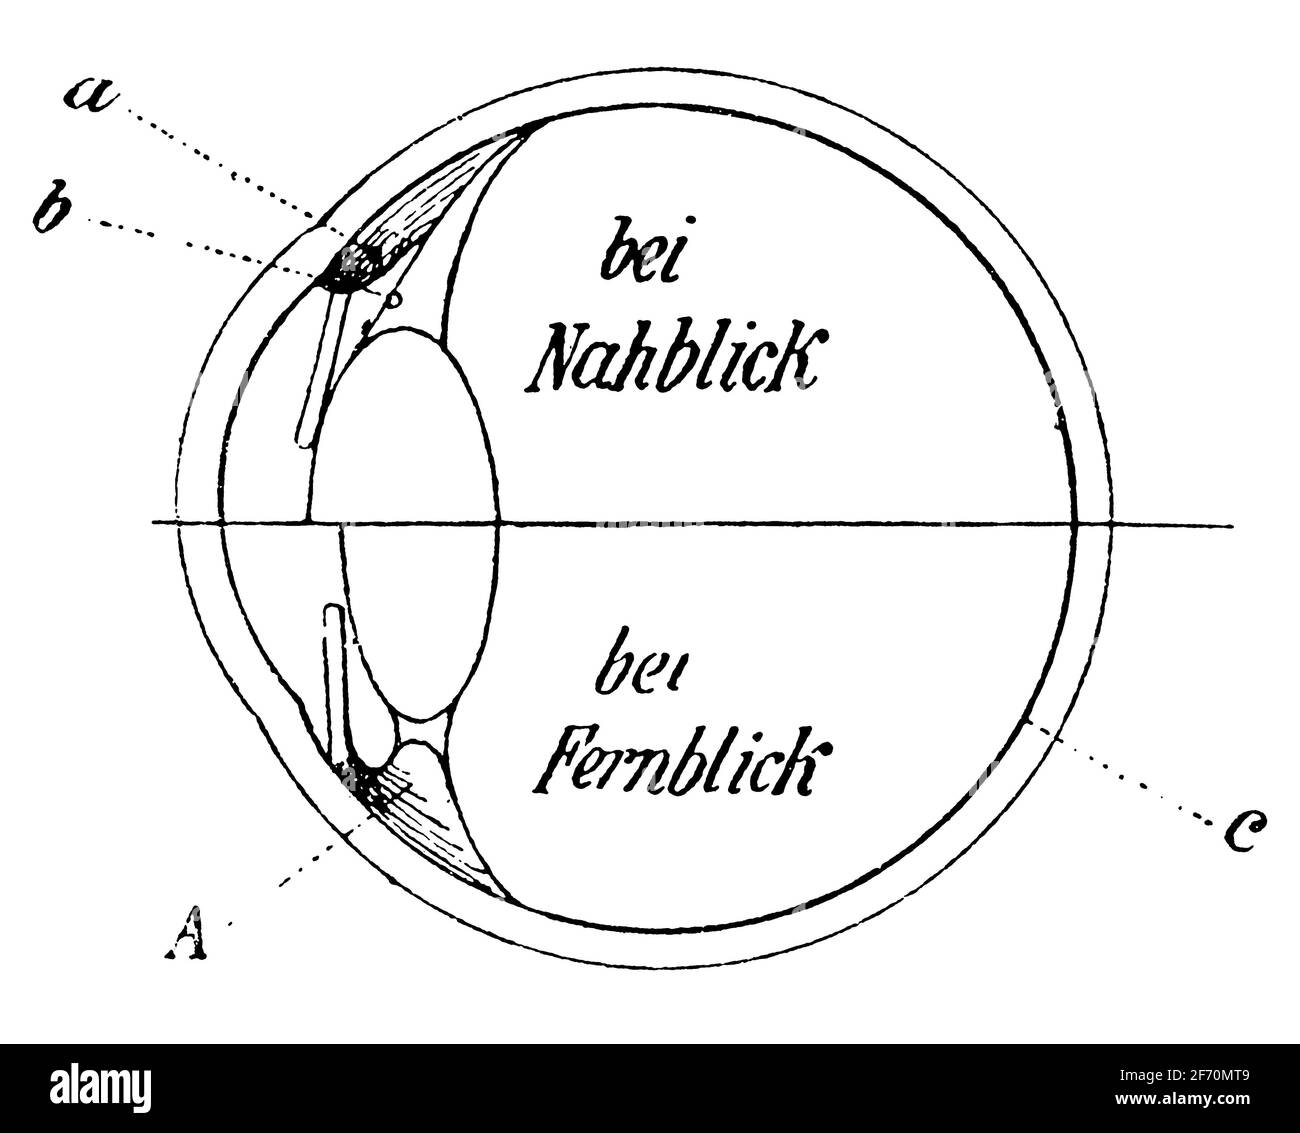 La moitié supérieure montre l'œil pendant l'hébergement, la moitié inférieure montre l'œil au repos. Illustration du 19e siècle. Allemagne. Arrière-plan blanc. Banque D'Images